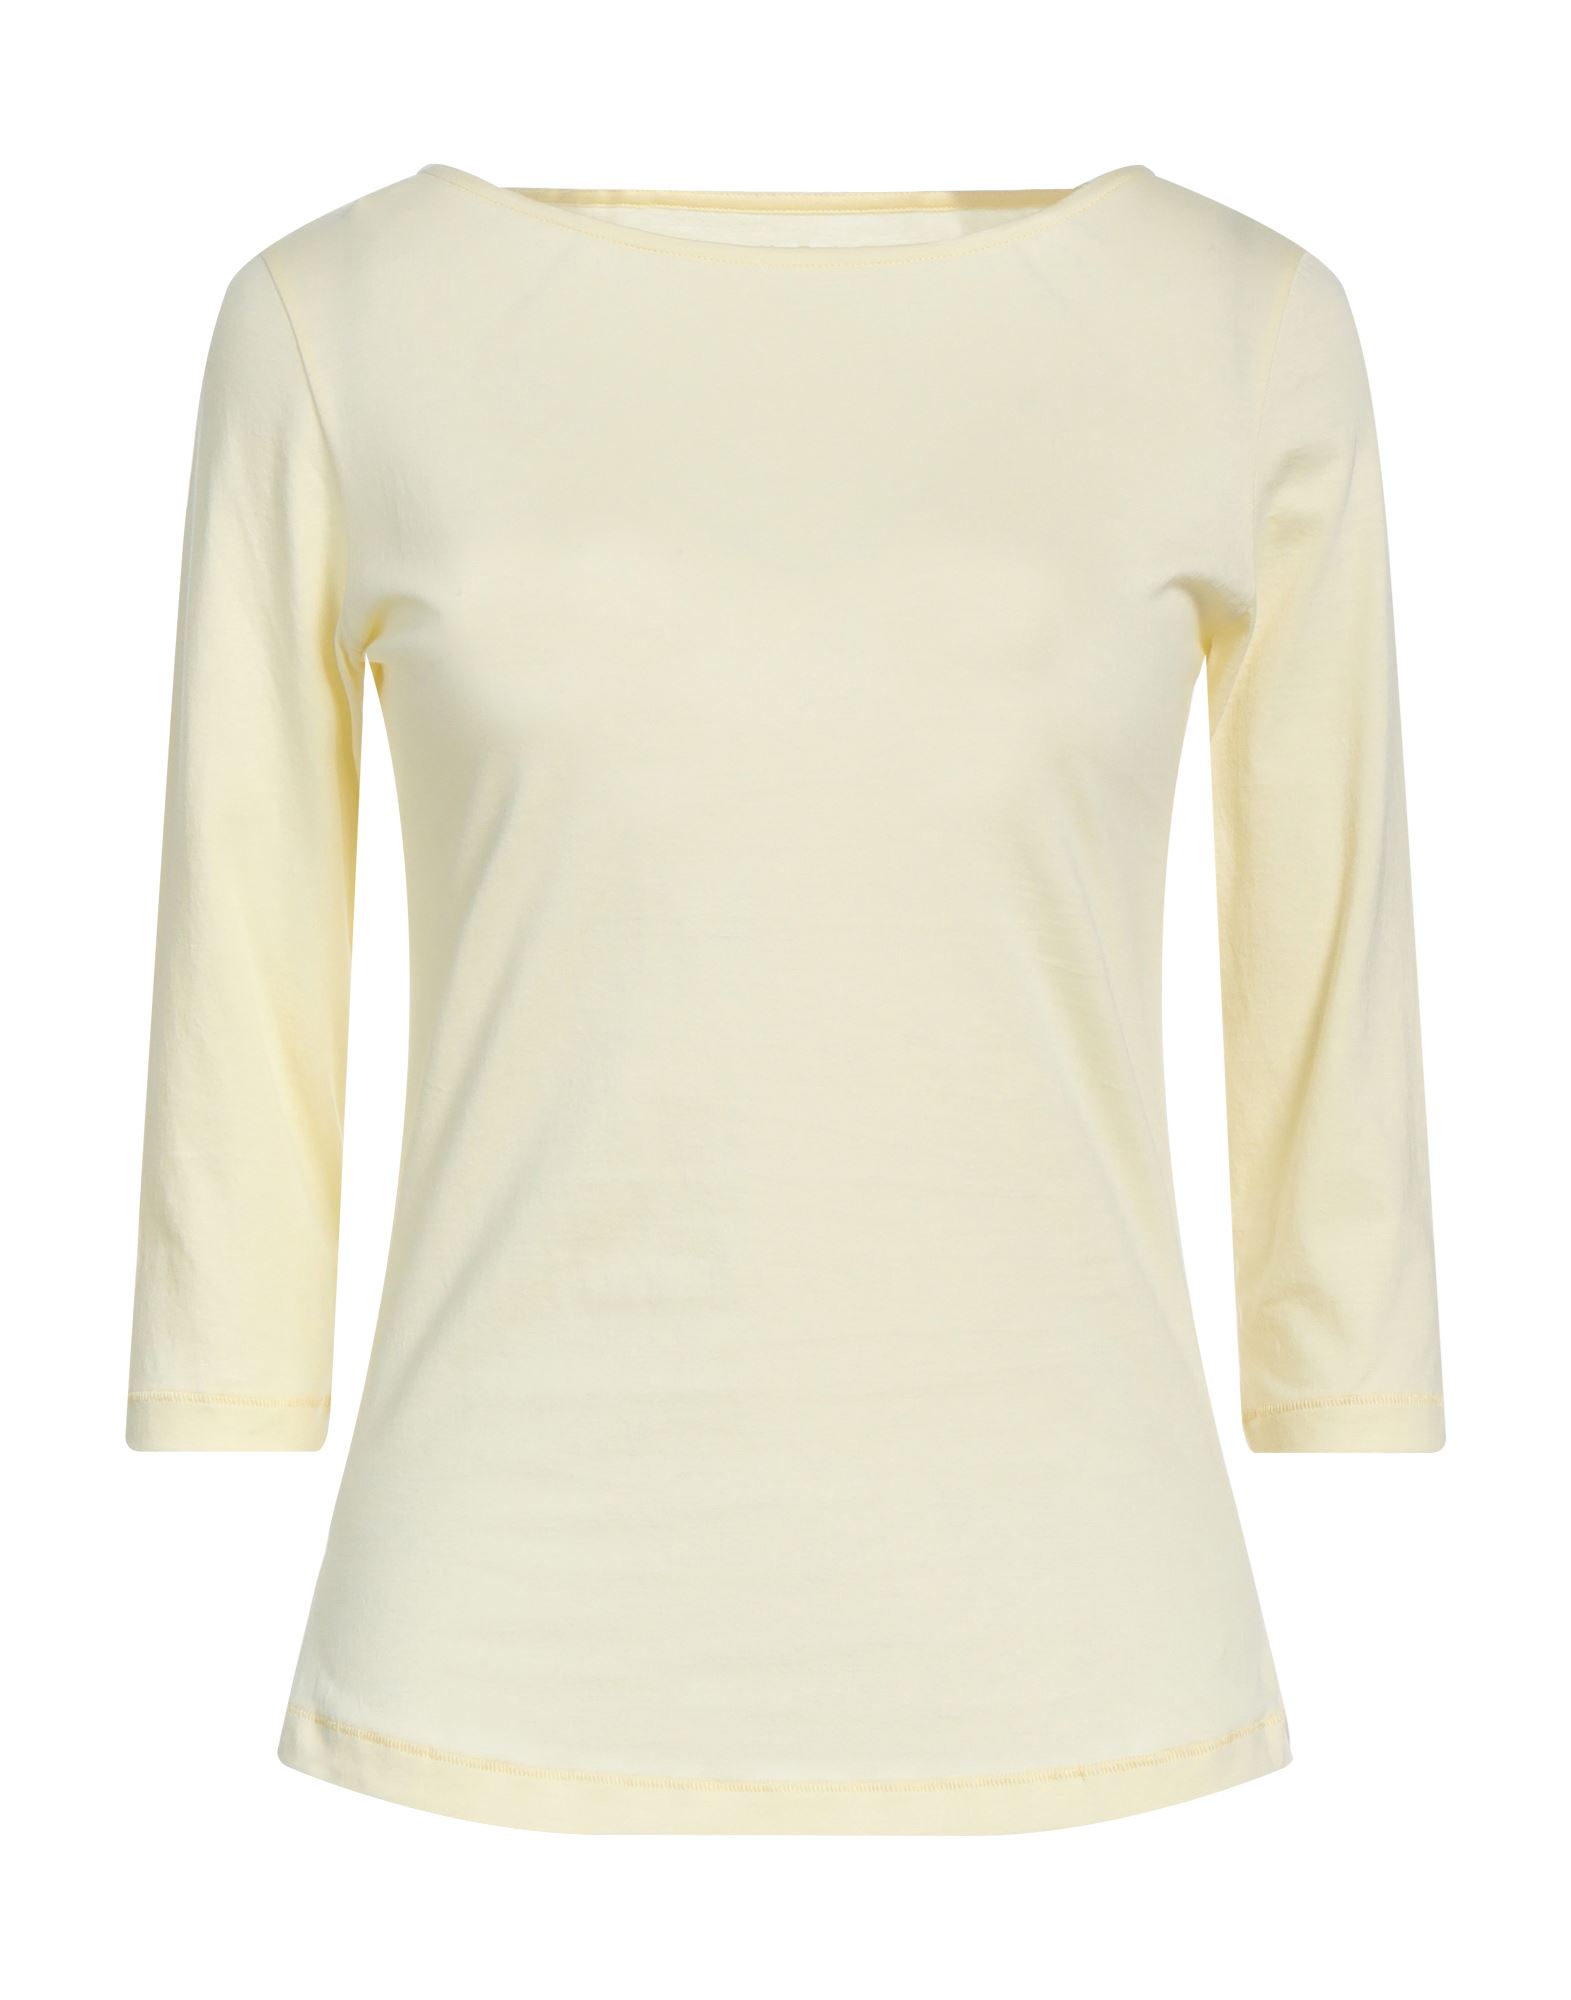 Incentive! Woman T-shirt Yellow Size Xs Organic Cotton